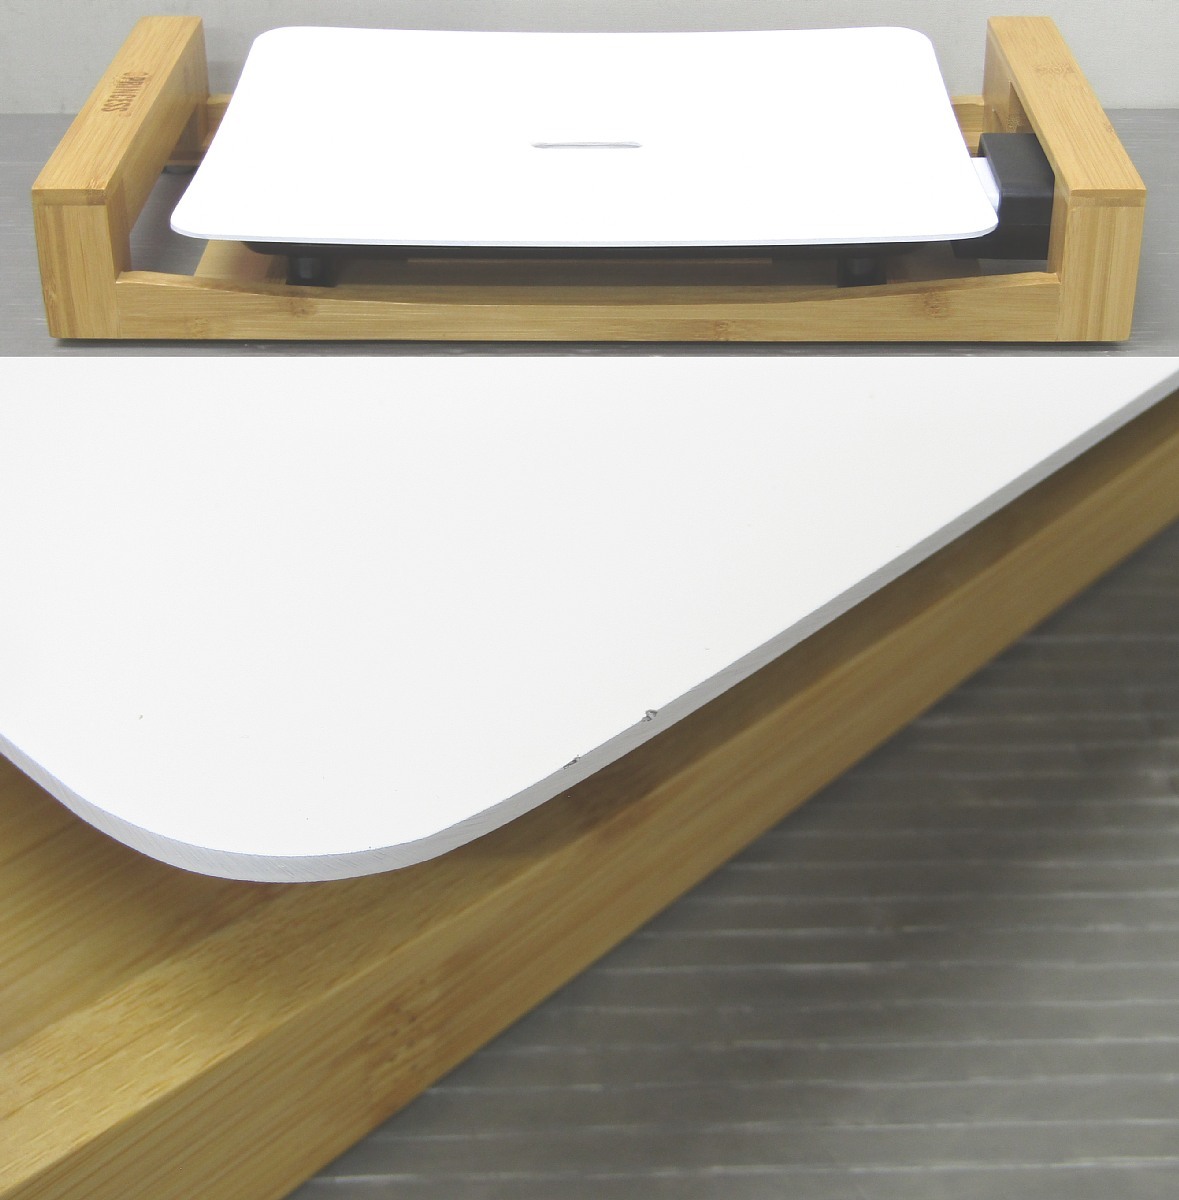 新品展示品 プリンセス テーブルグリル Mini Pure 103035 竹製台座 ホットプレート PRINCESS Table Grill_プレートのふちに小キズが見られます。